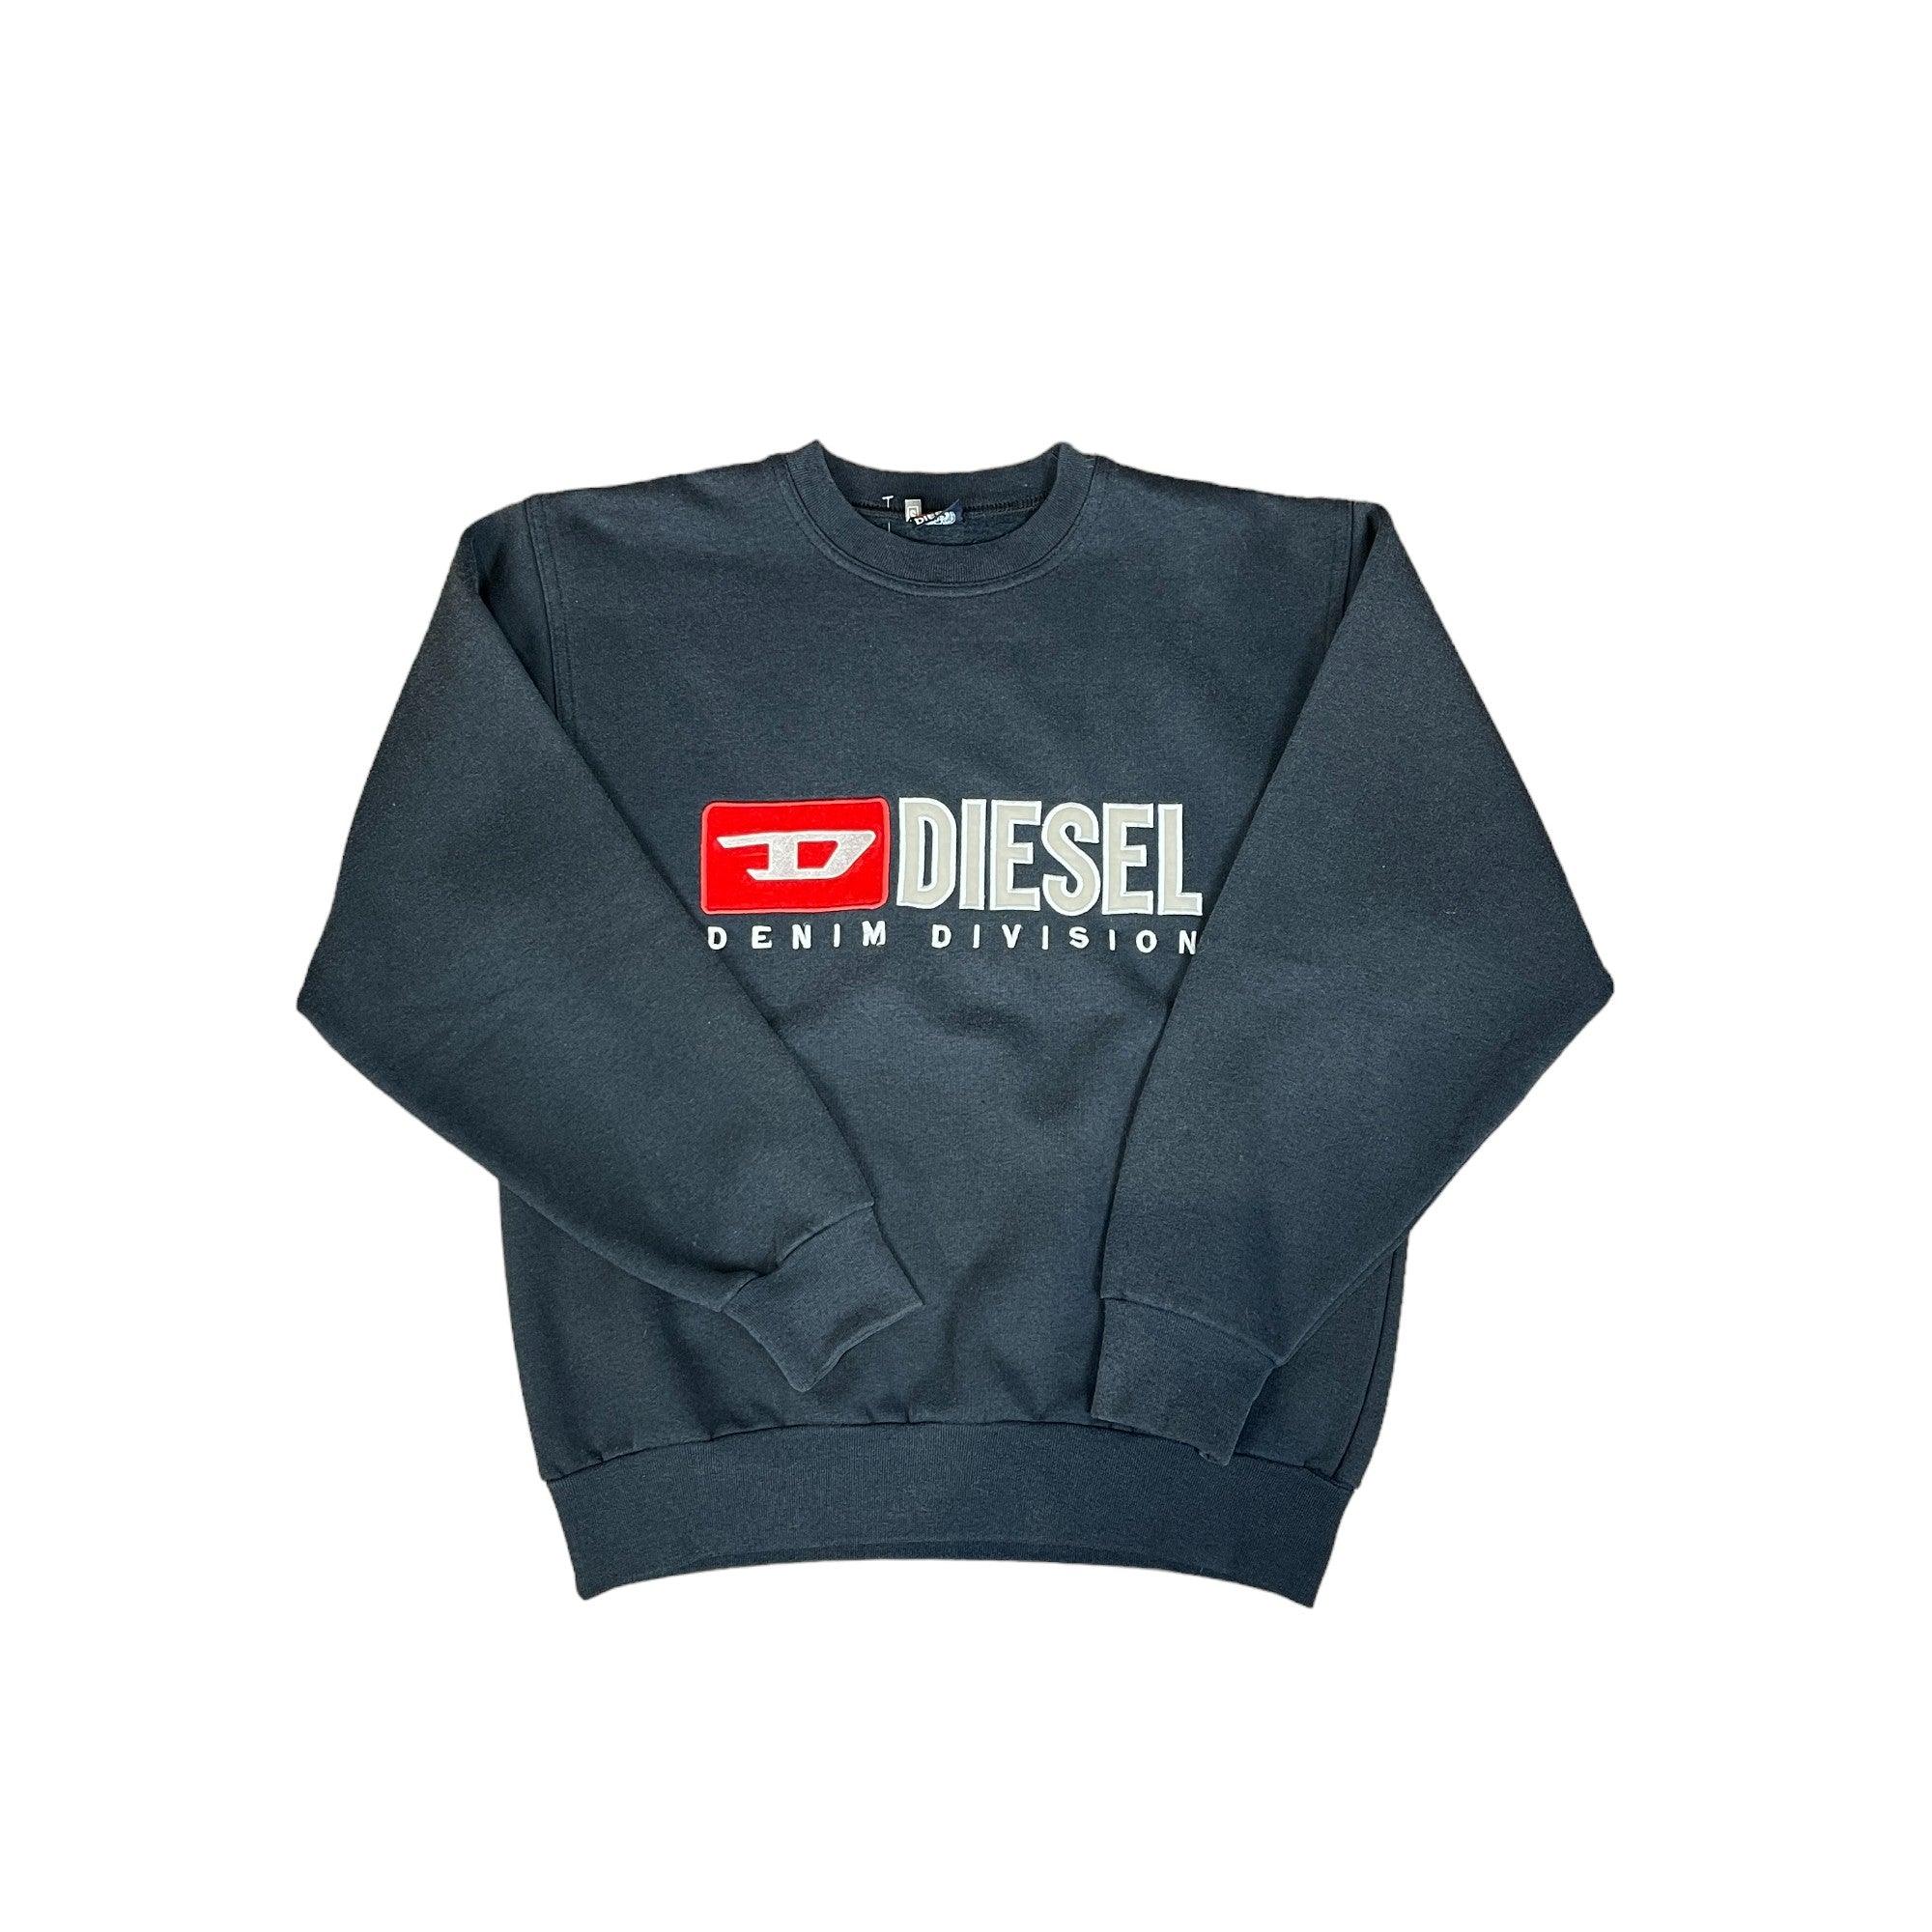 Vintage 90s Black Diesel Sweatshirt - Small - The Streetwear Studio